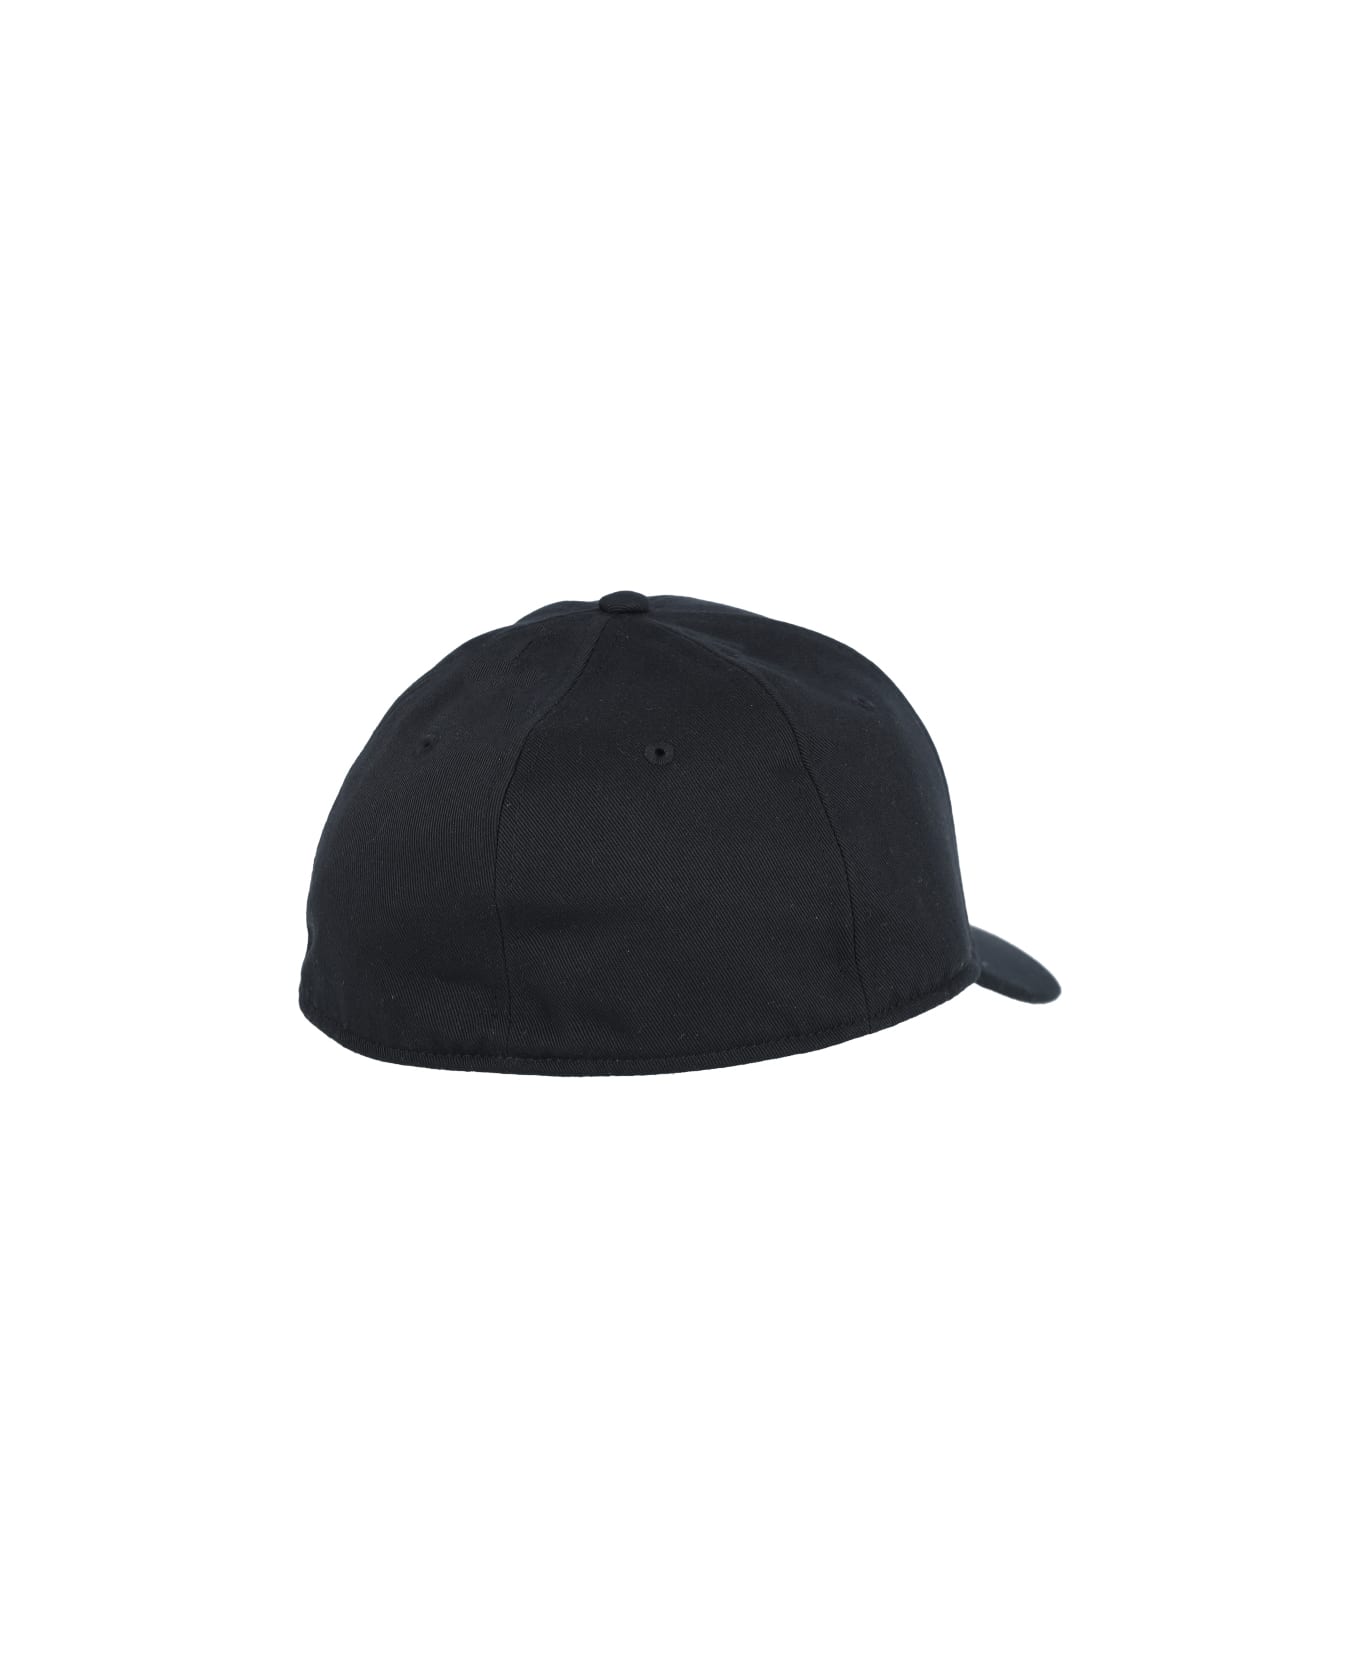 Canada Goose Hat - Black